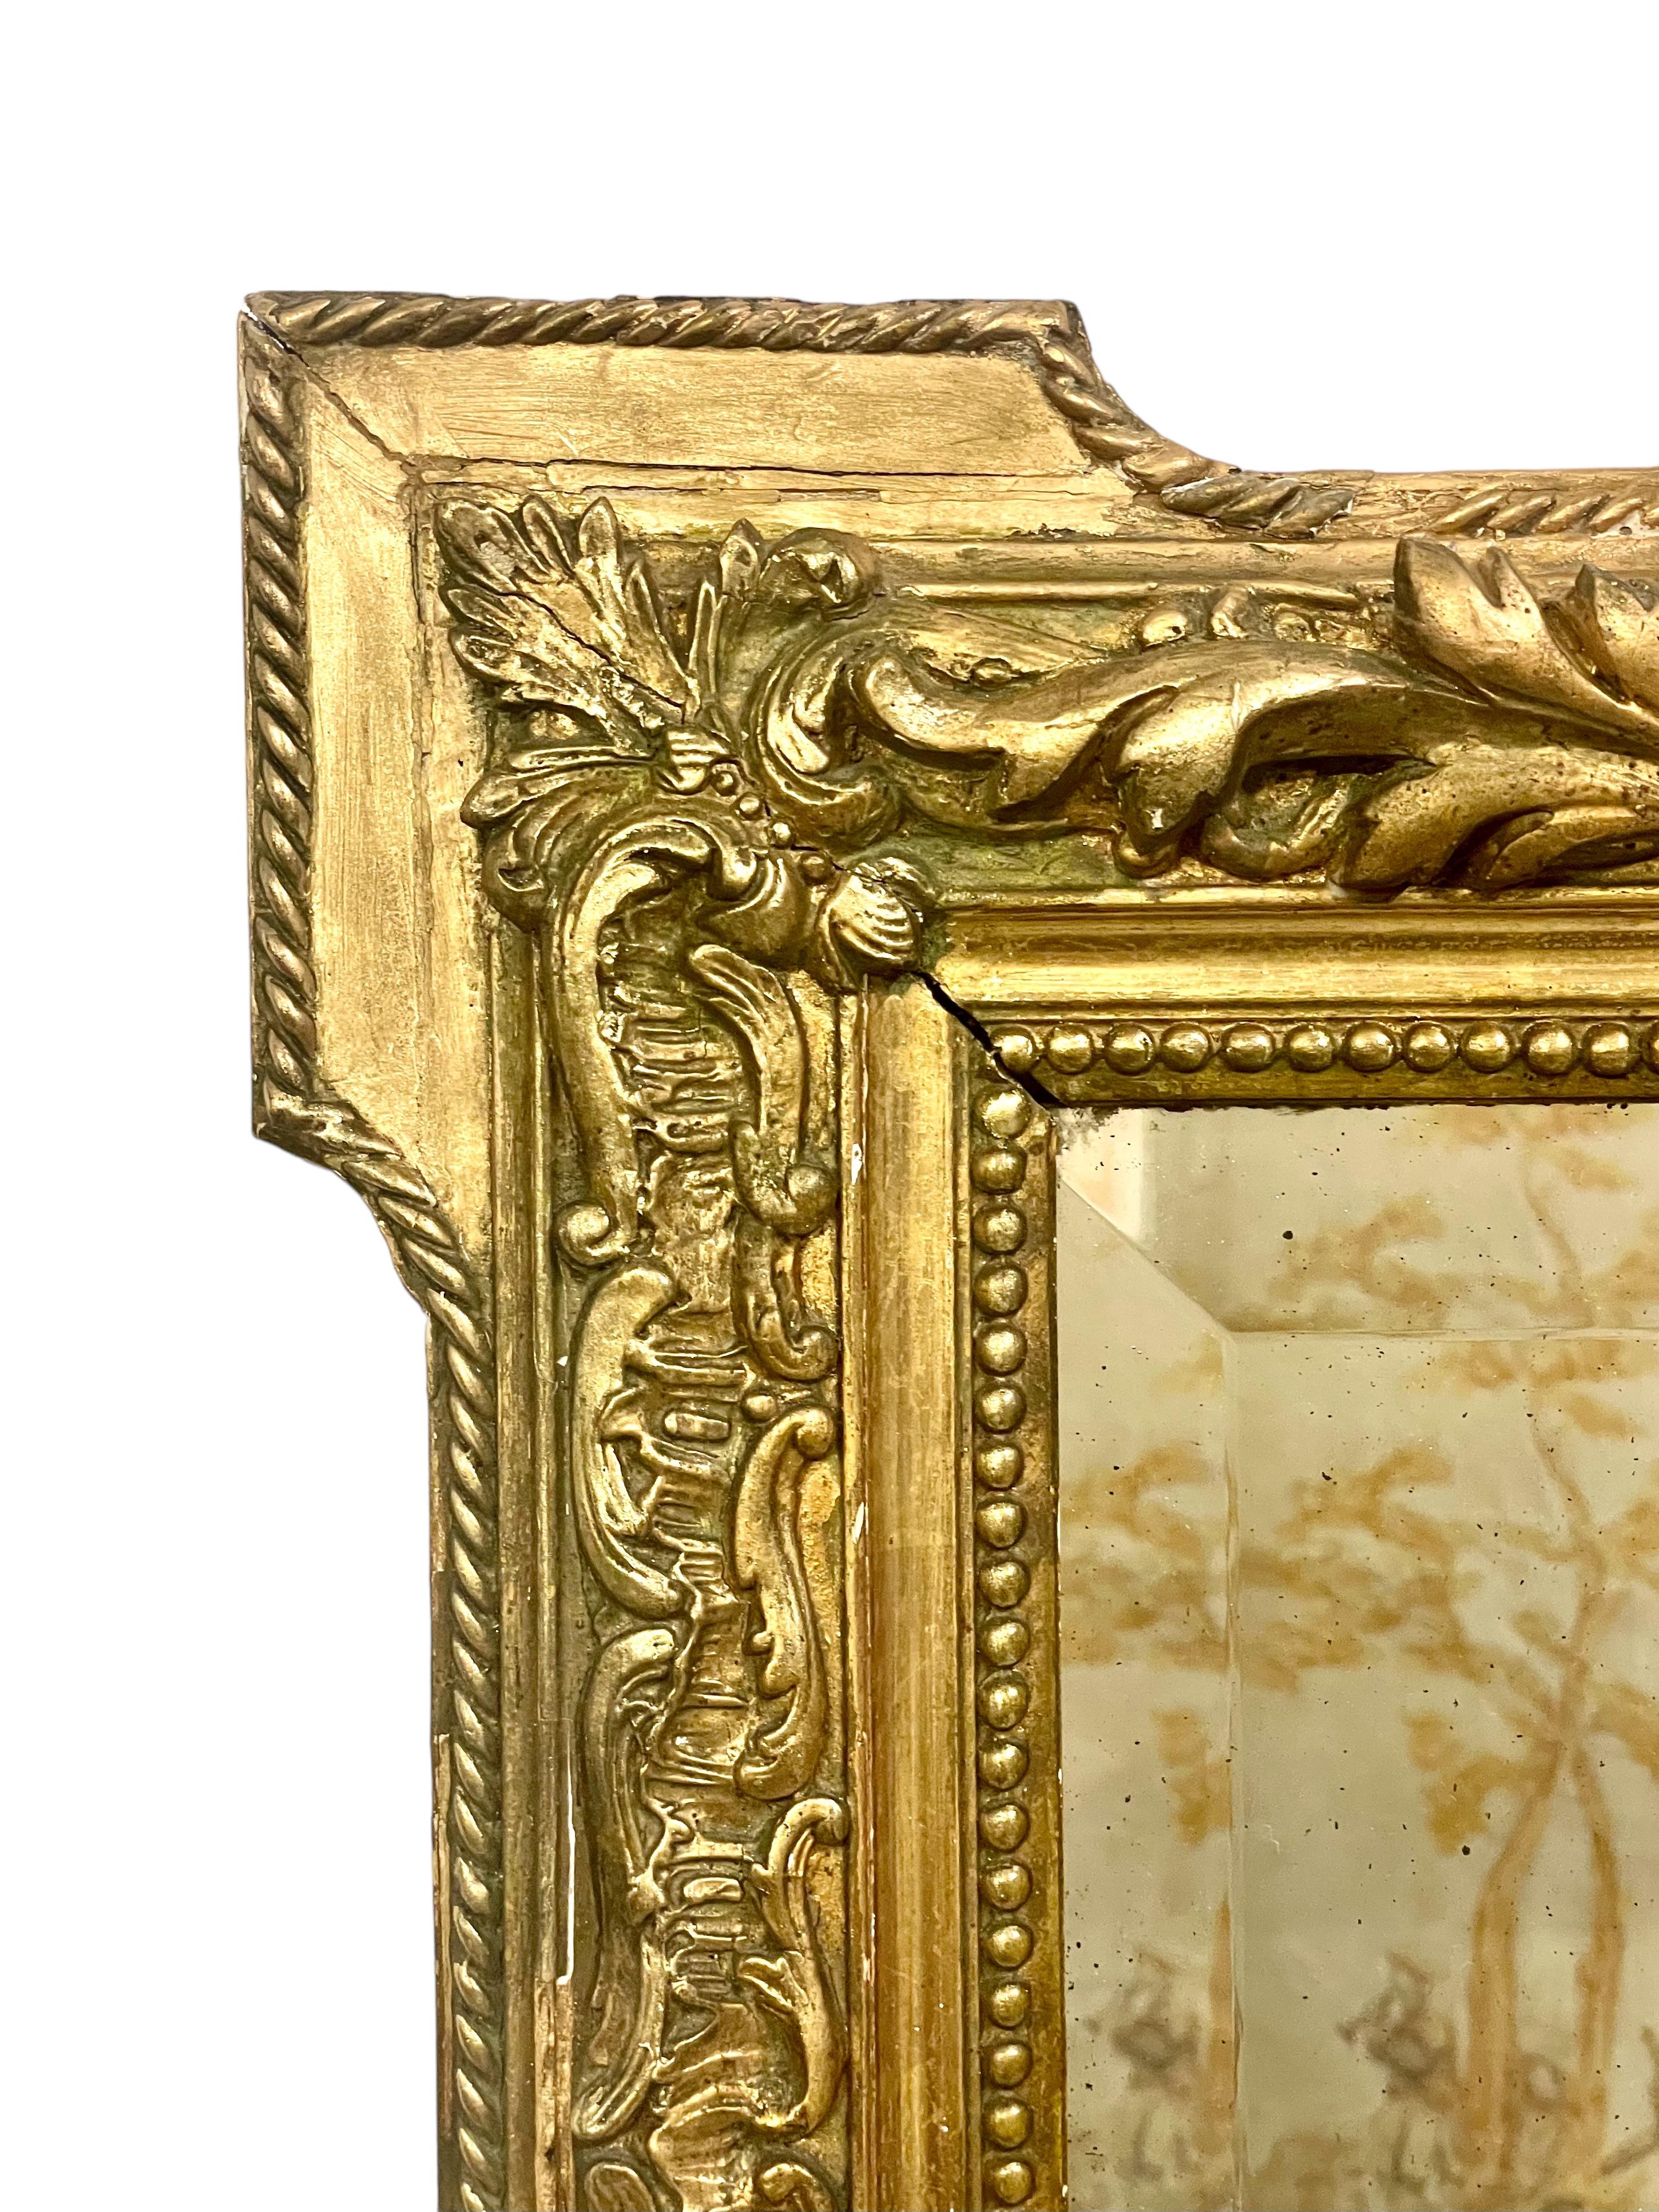 Ein großer und beeindruckender rechteckiger Mantelspiegel Napoleons III. aus dem 19. Jahrhundert in einem Rahmen aus Holz und vergoldetem Stuck, der von einem imposanten Giebel mit Cherubinen und Delphinen überragt wird, die ein ovales Medaillon